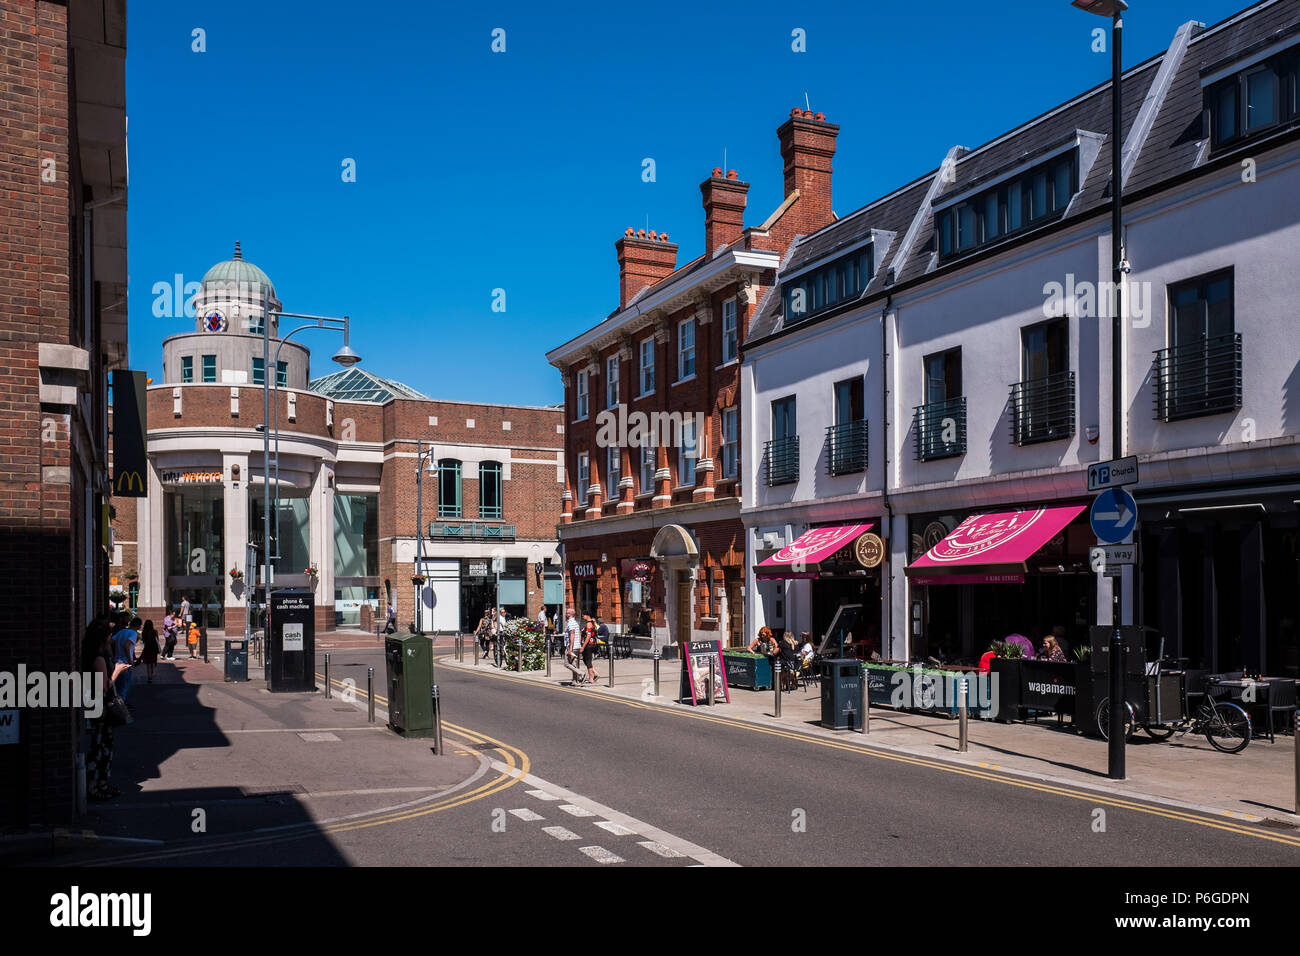 Le centre-ville de Watford, Hertfordshire, Angleterre, Royaume-Uni Banque D'Images